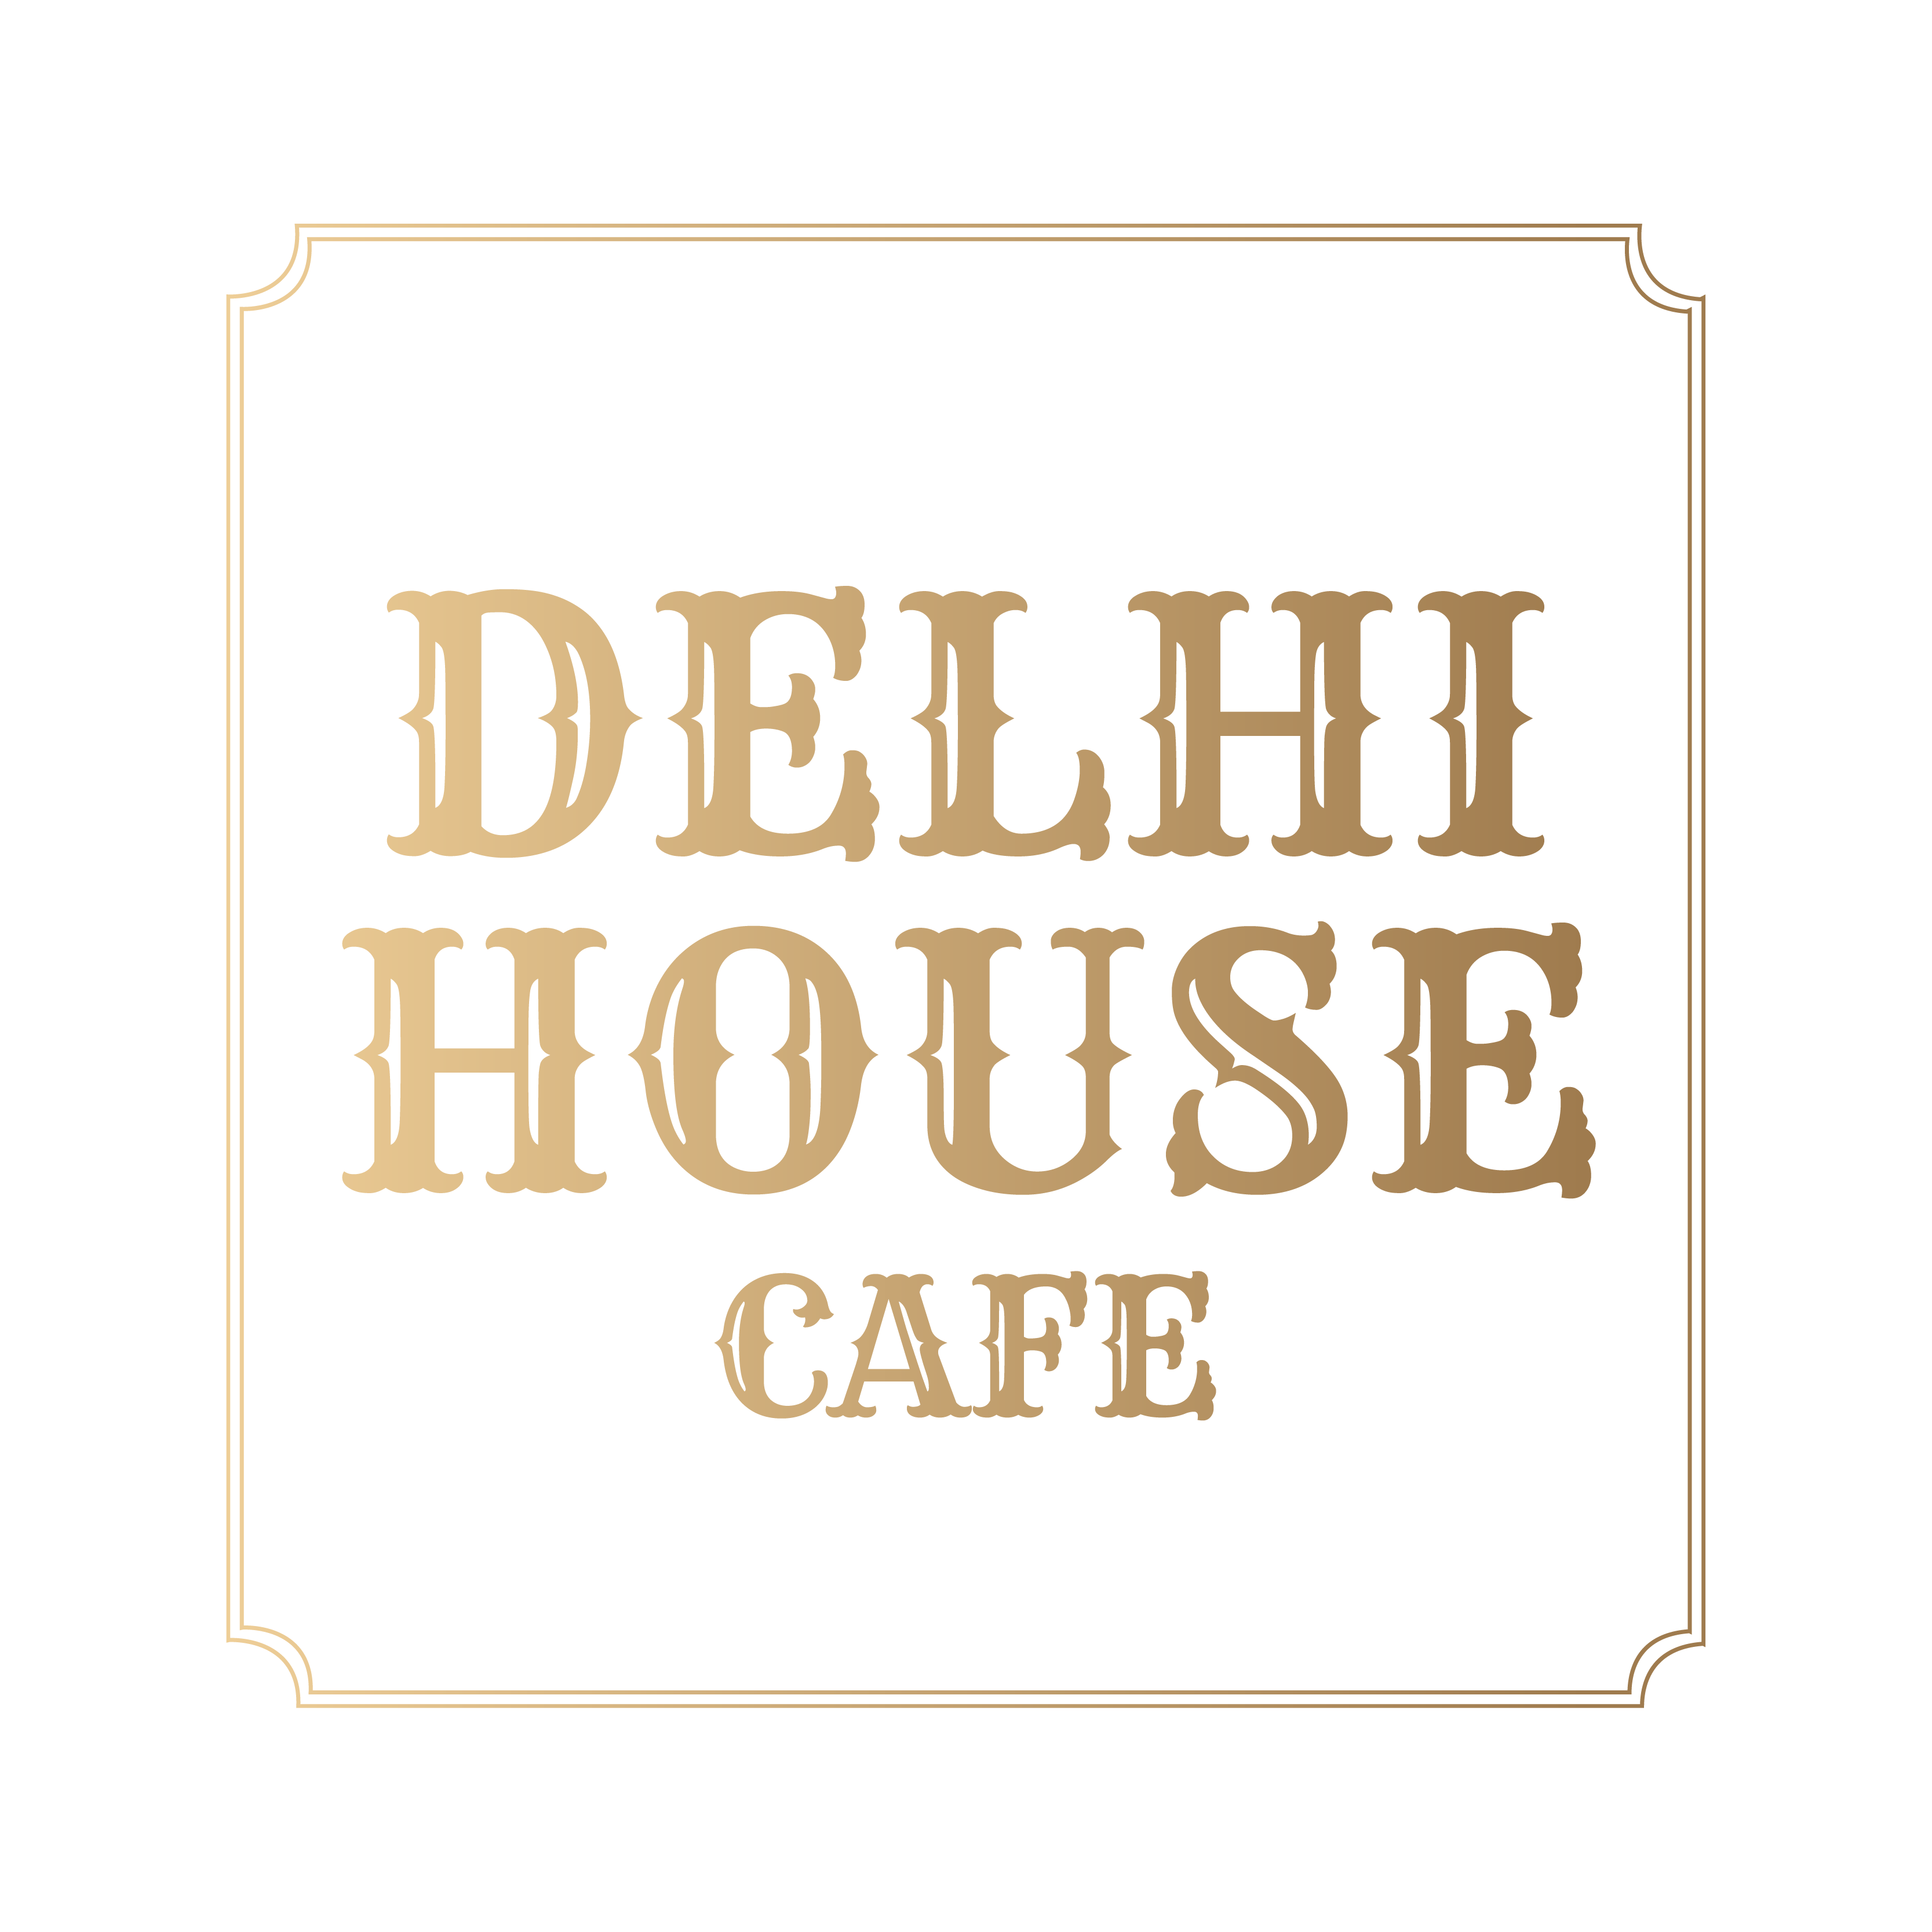 DelhiHouseCafe